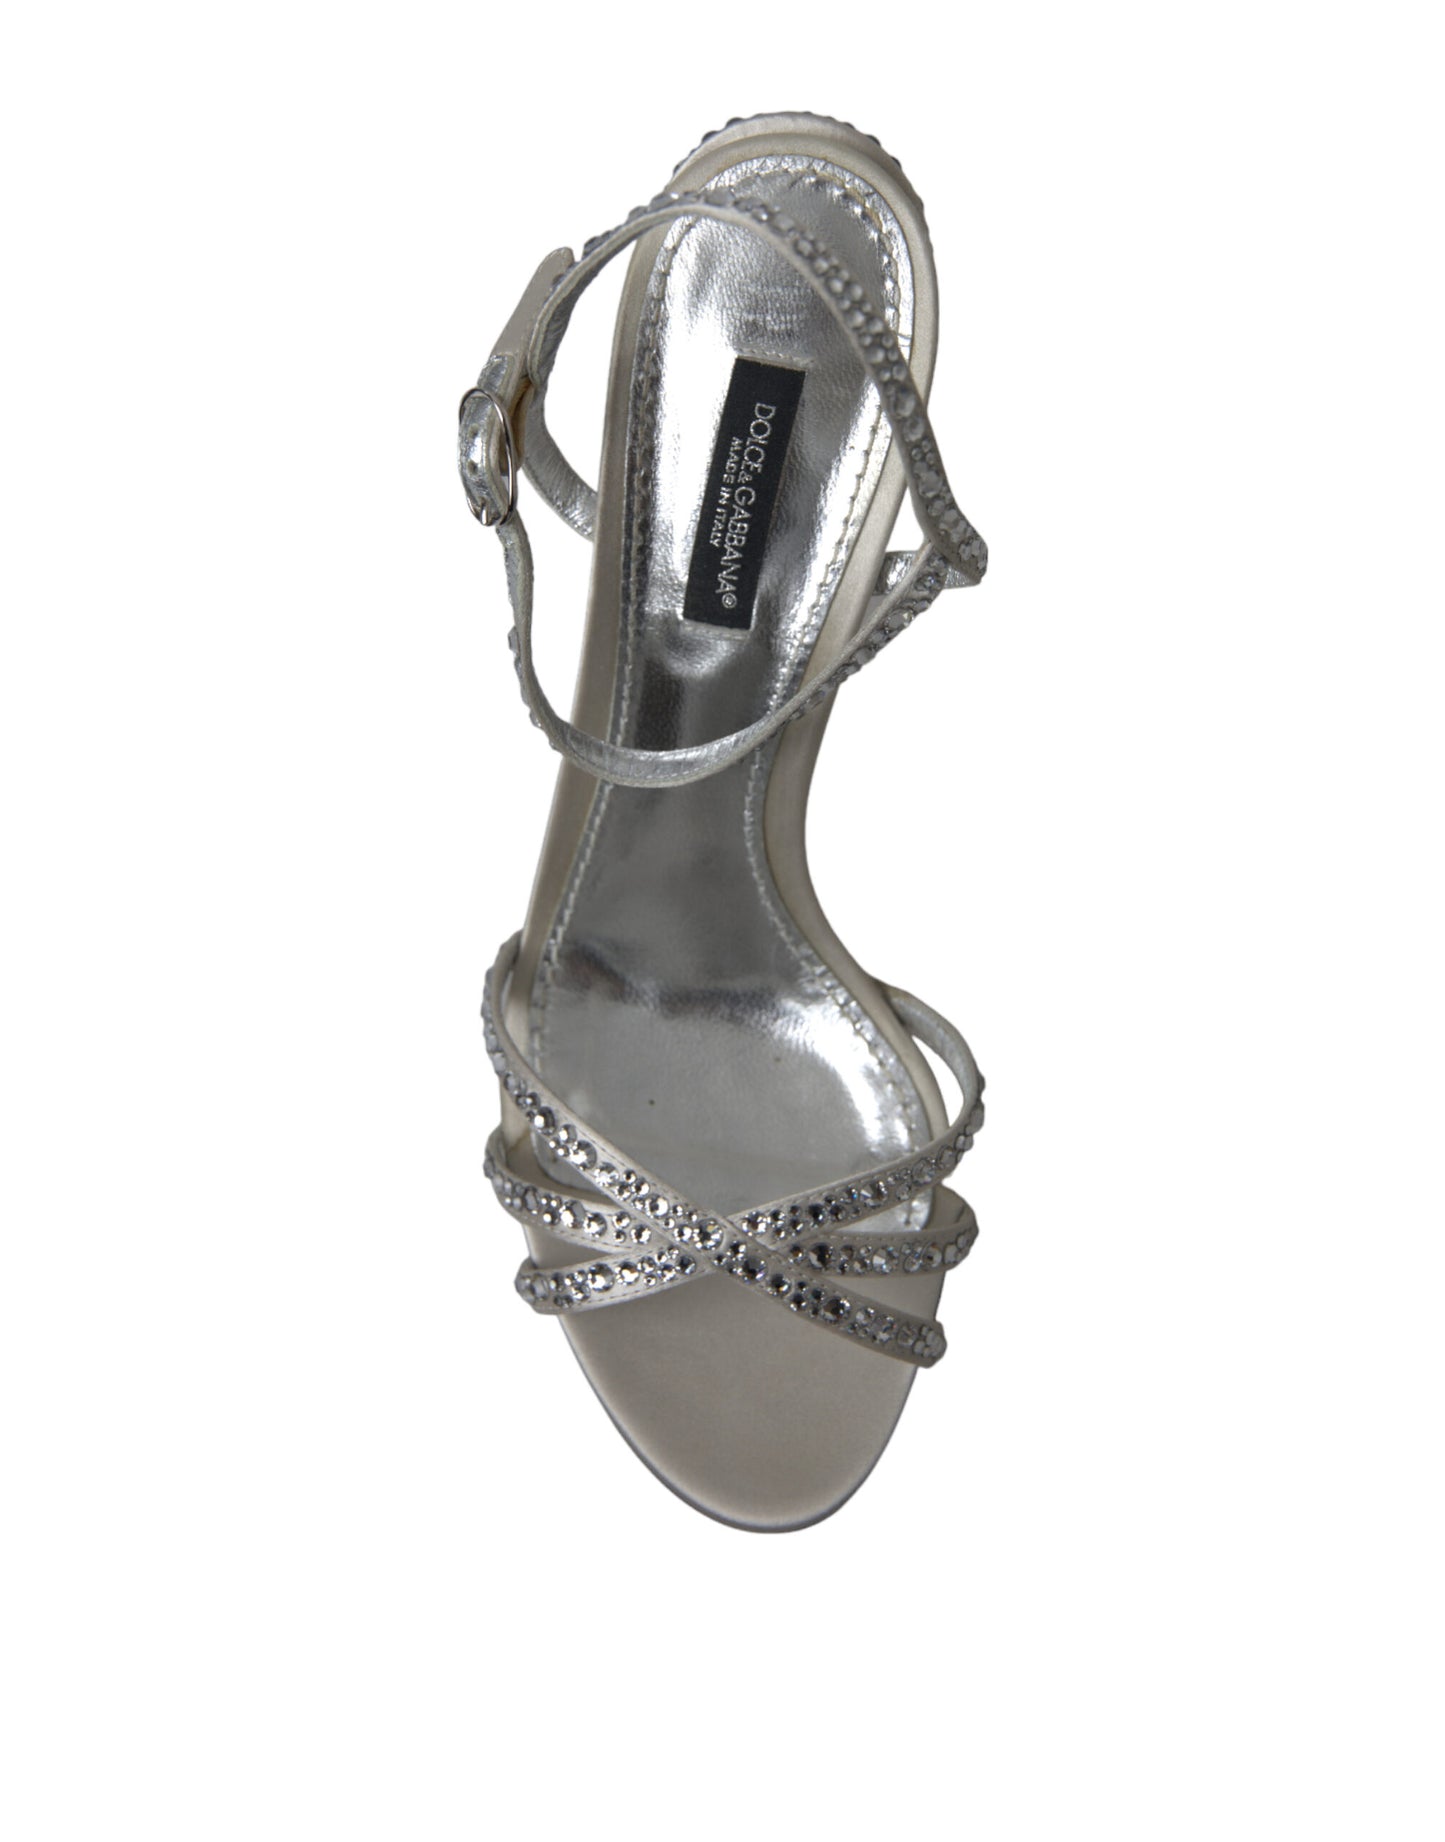 Elegant Crystal Embellished Heels Sandals